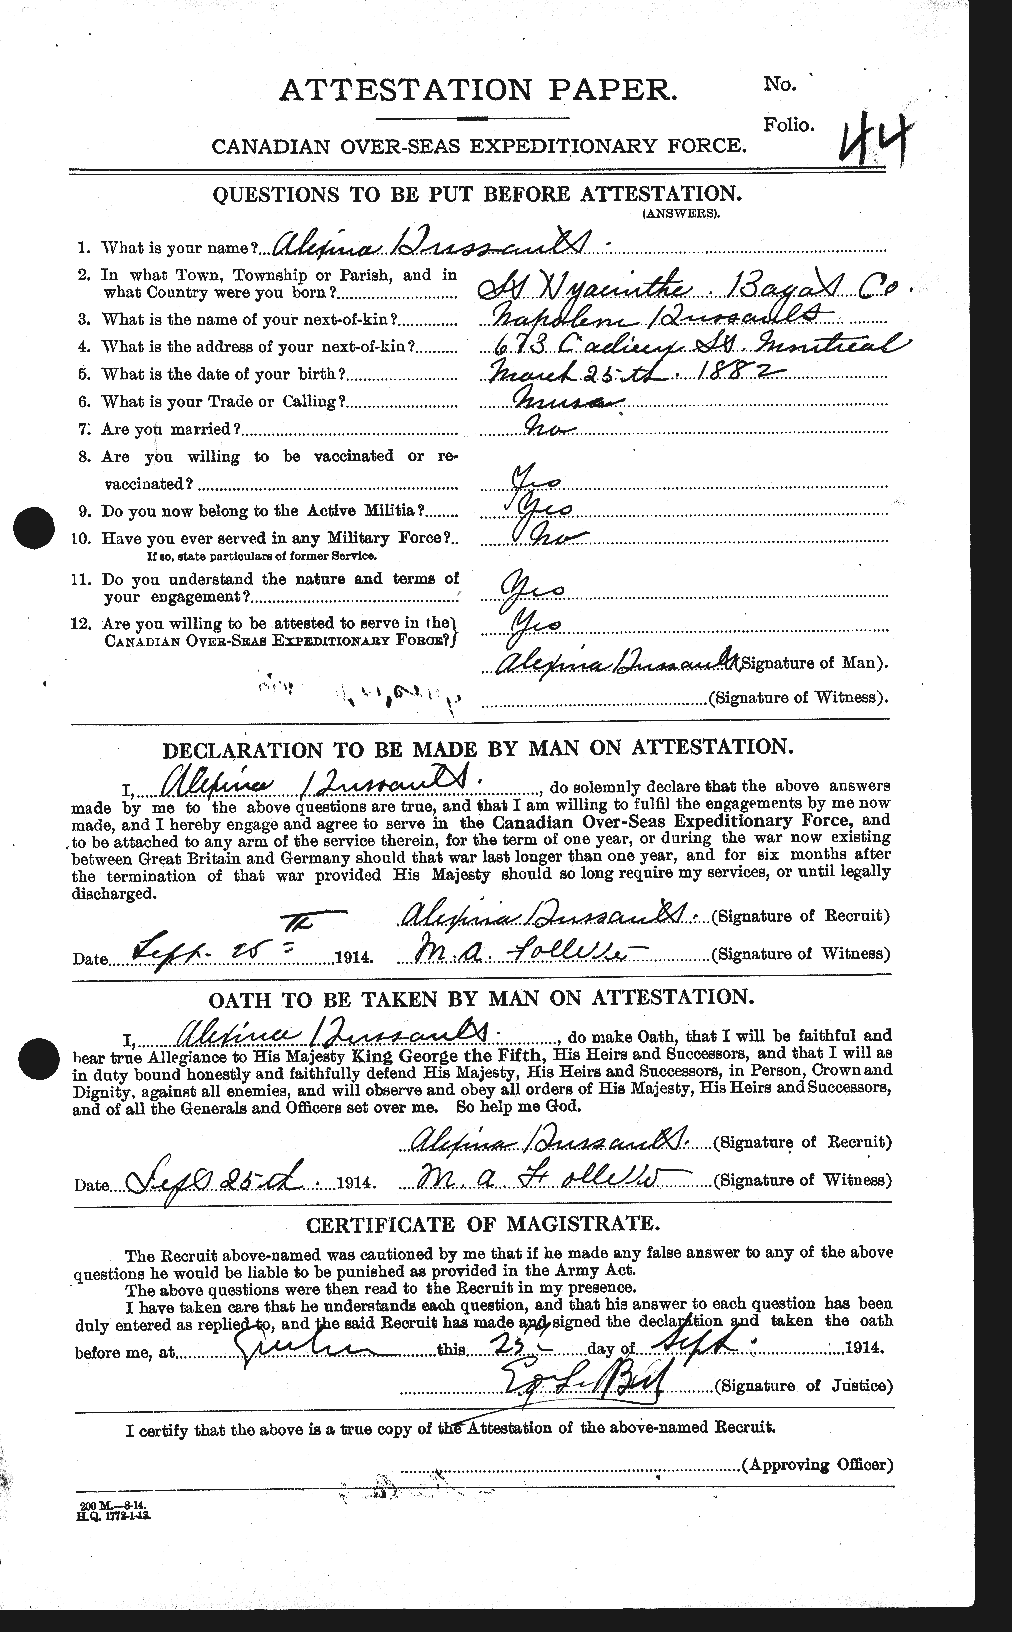 Dossiers du Personnel de la Première Guerre mondiale - CEC 237318a